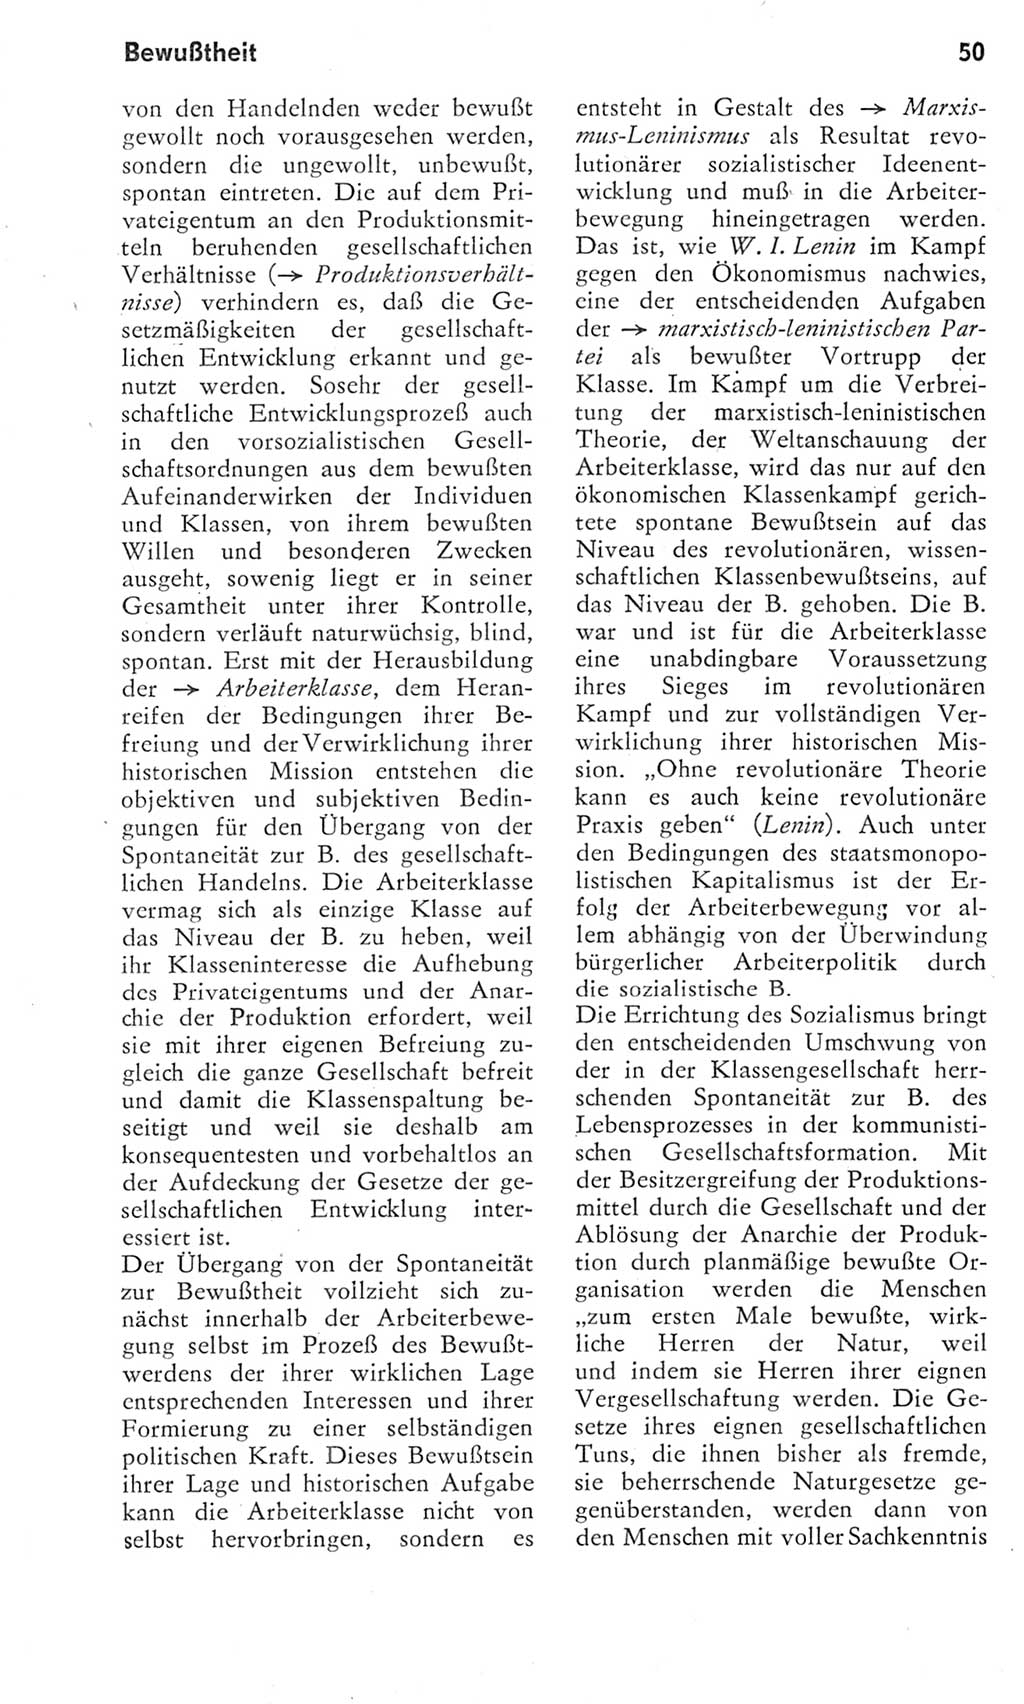 Kleines Wörterbuch der marxistisch-leninistischen Philosophie [Deutsche Demokratische Republik (DDR)] 1975, Seite 50 (Kl. Wb. ML Phil. DDR 1975, S. 50)